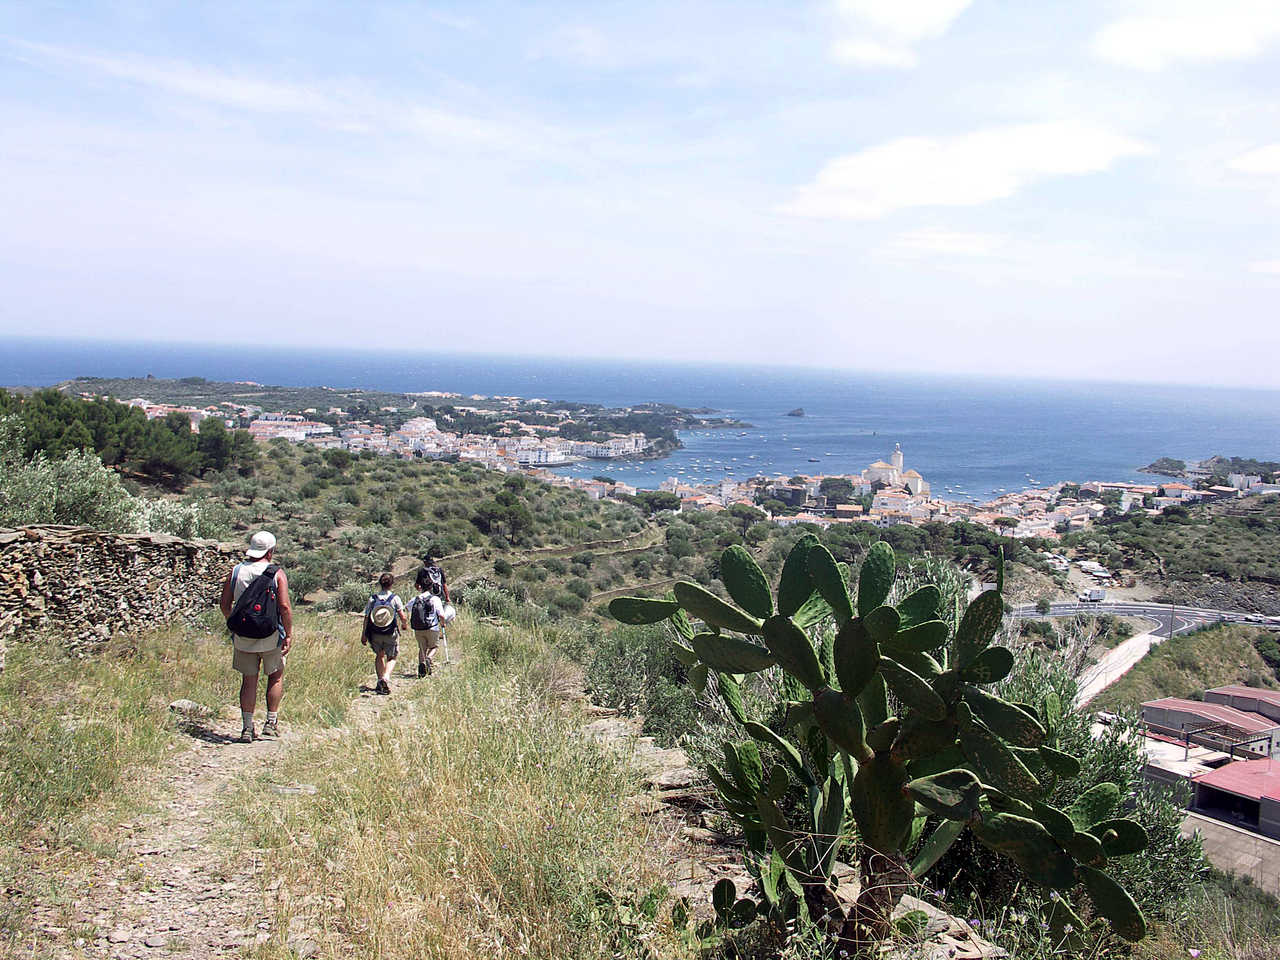 Randonneurs sur le chemin entre Collioure et Cadaques avec vue mer, Pyrénées